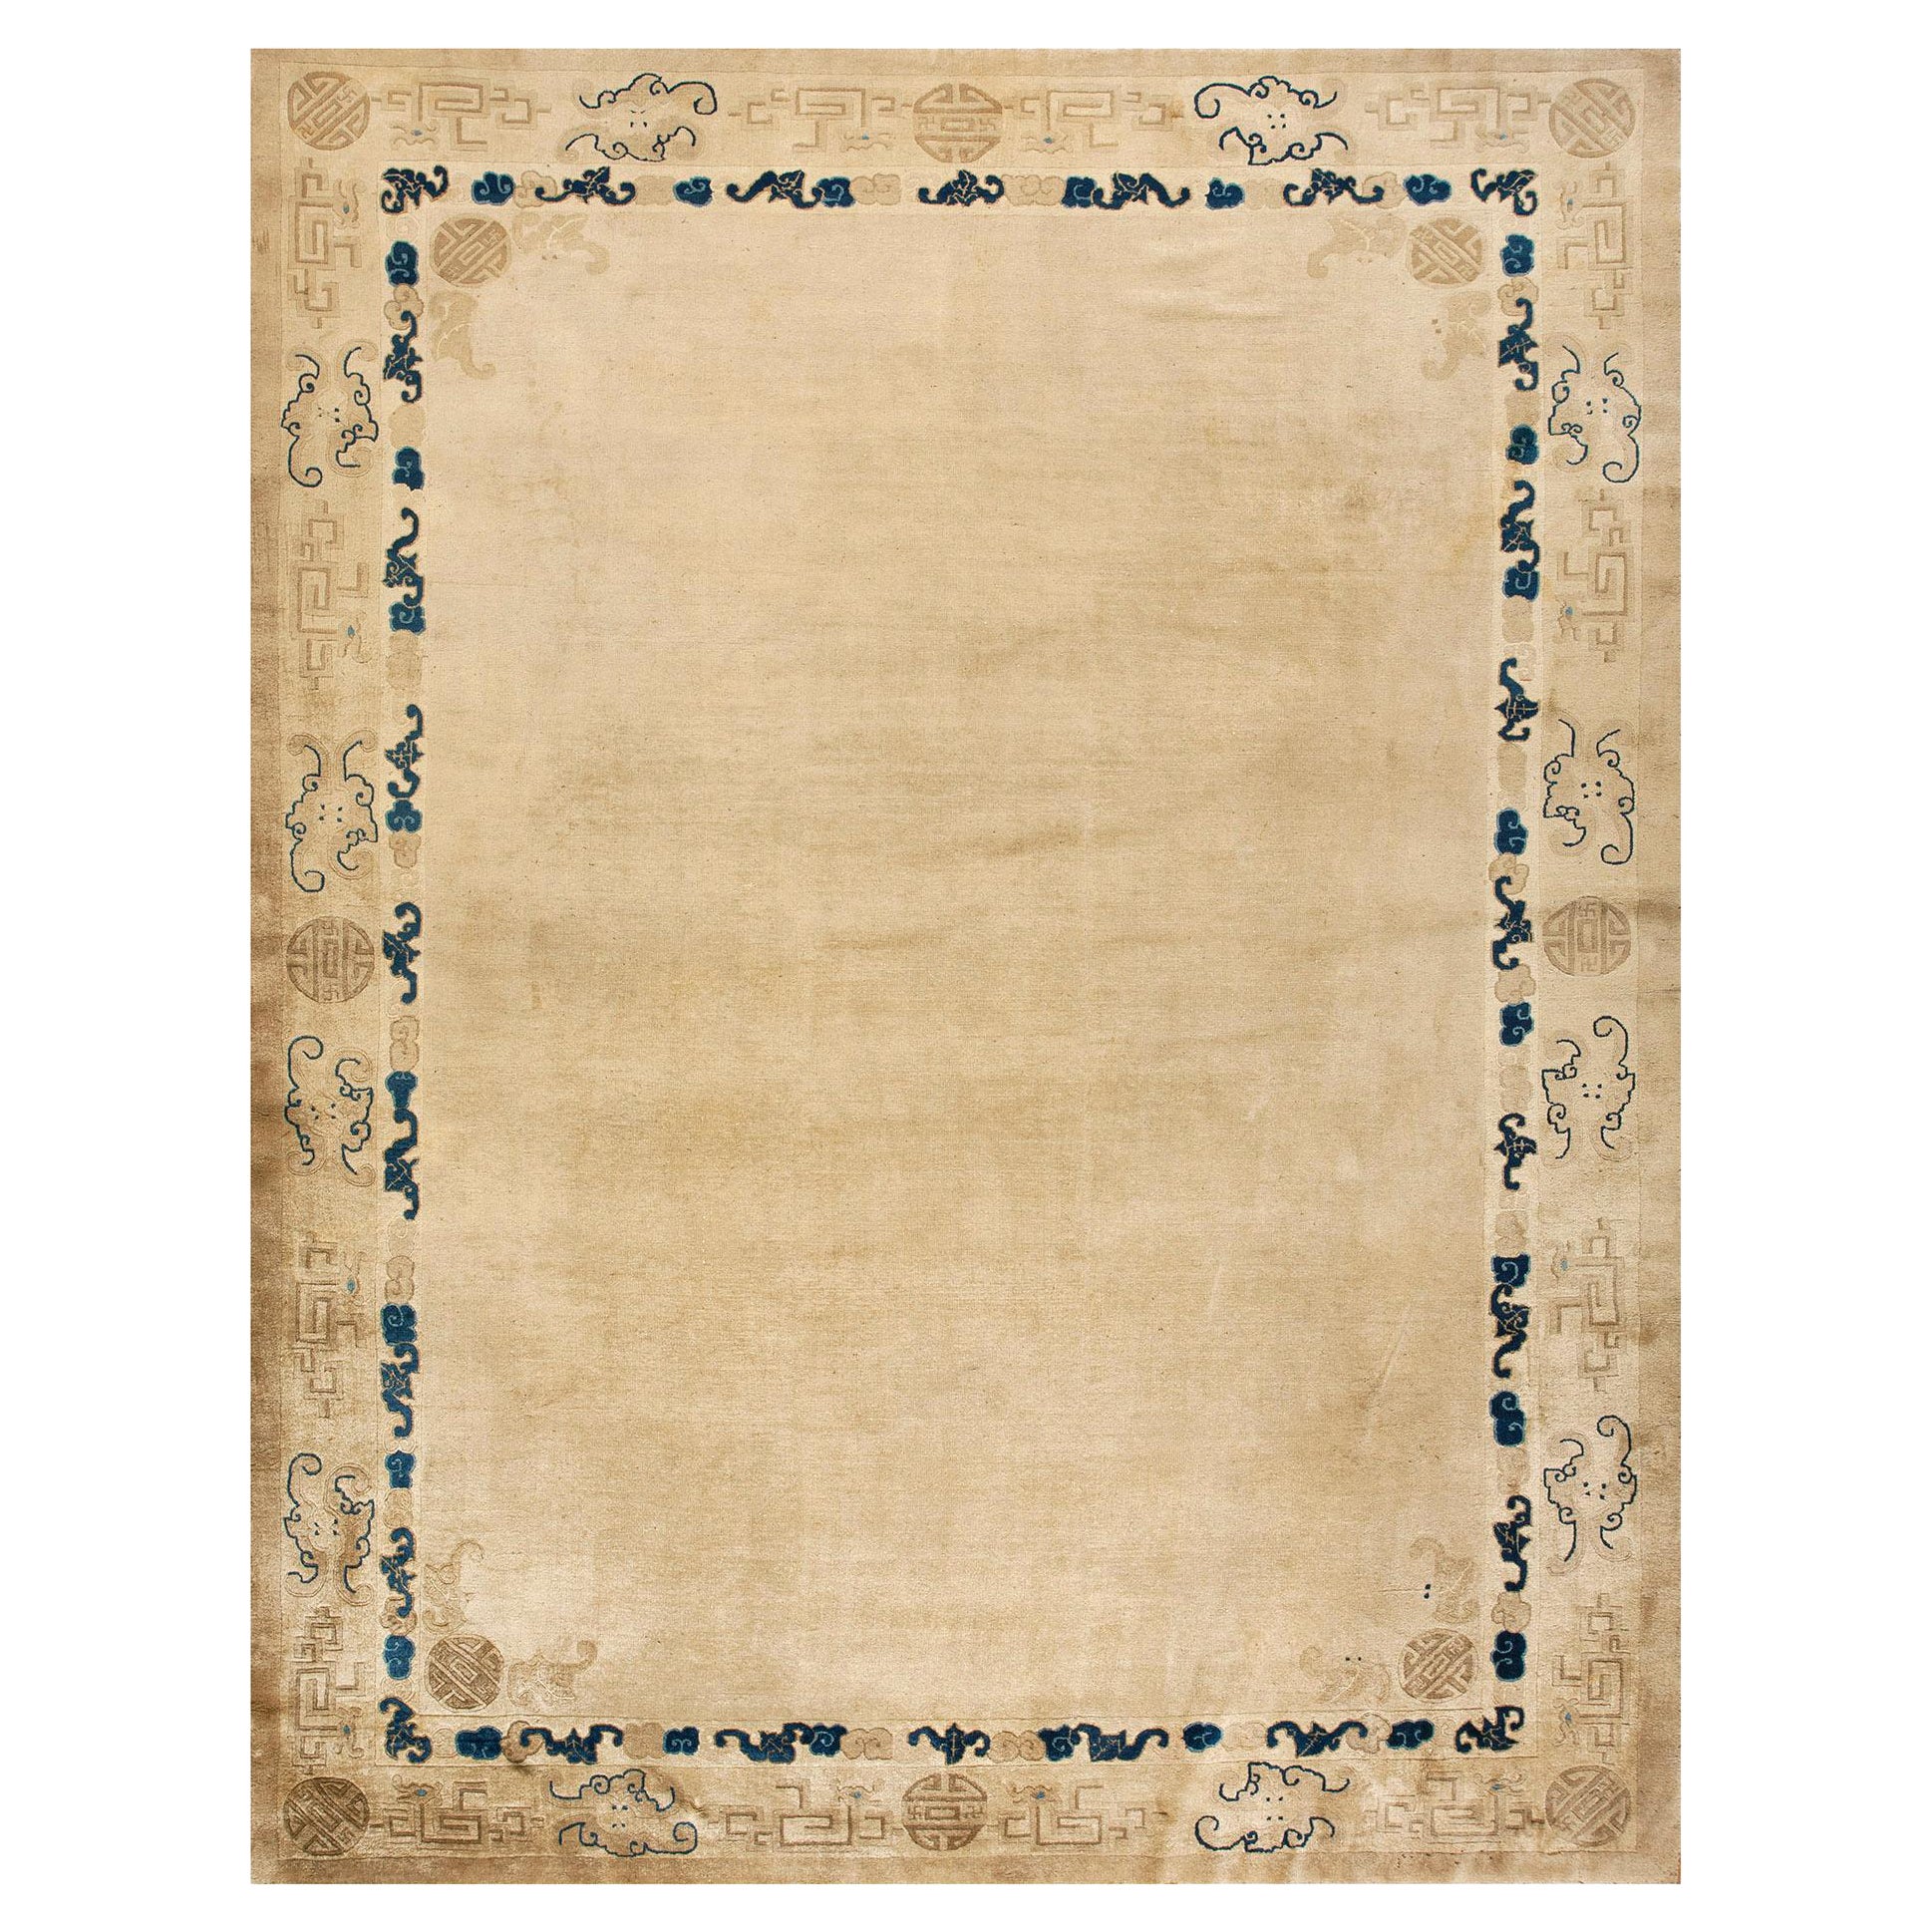 Chinesischer Pekinger Teppich des 9. Jahrhunderts ( 9'4" x 11'8" - 285 - 355)